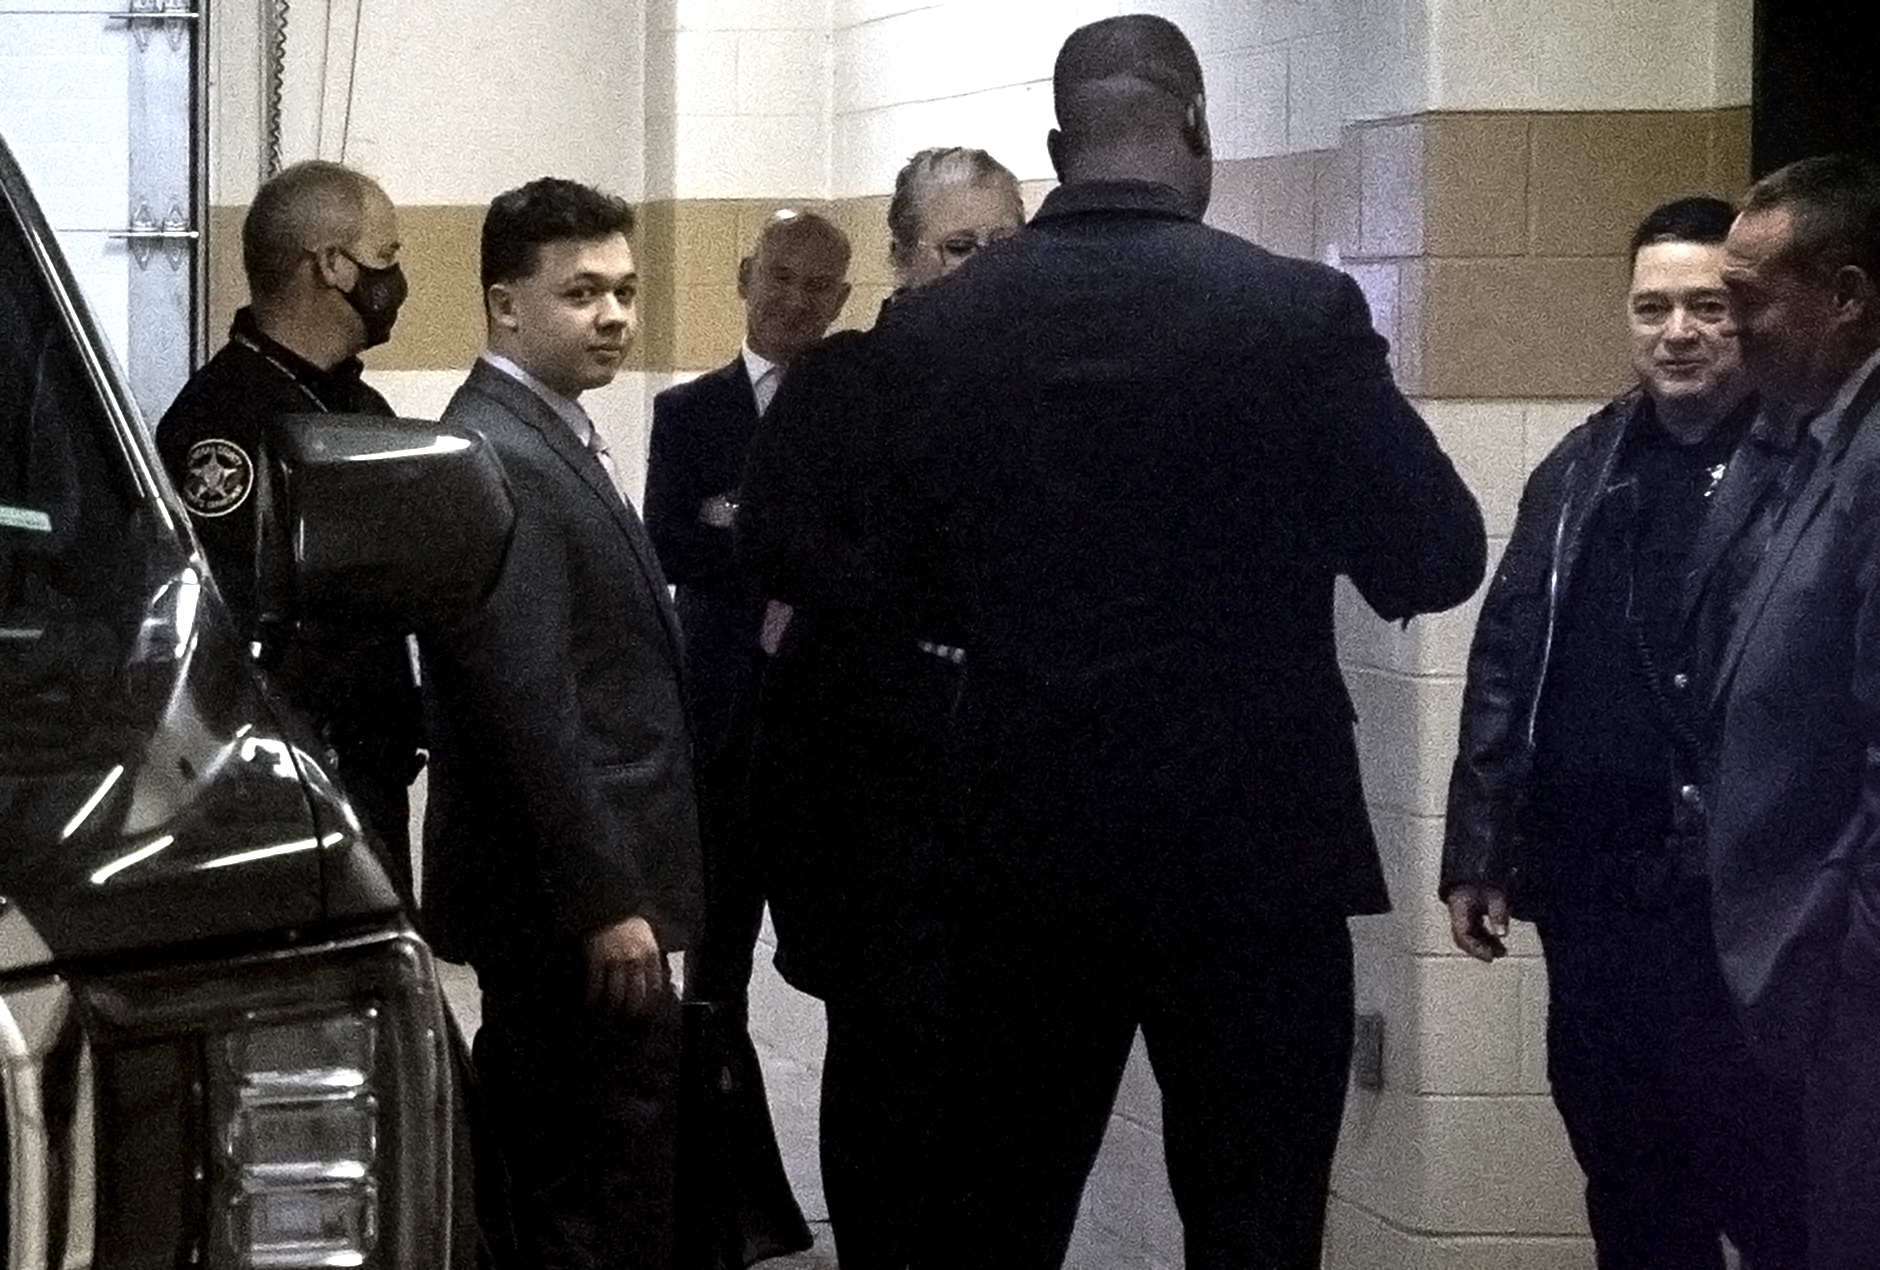 Kyle Rittenhouse is seen wearing a suit inside of a garage.